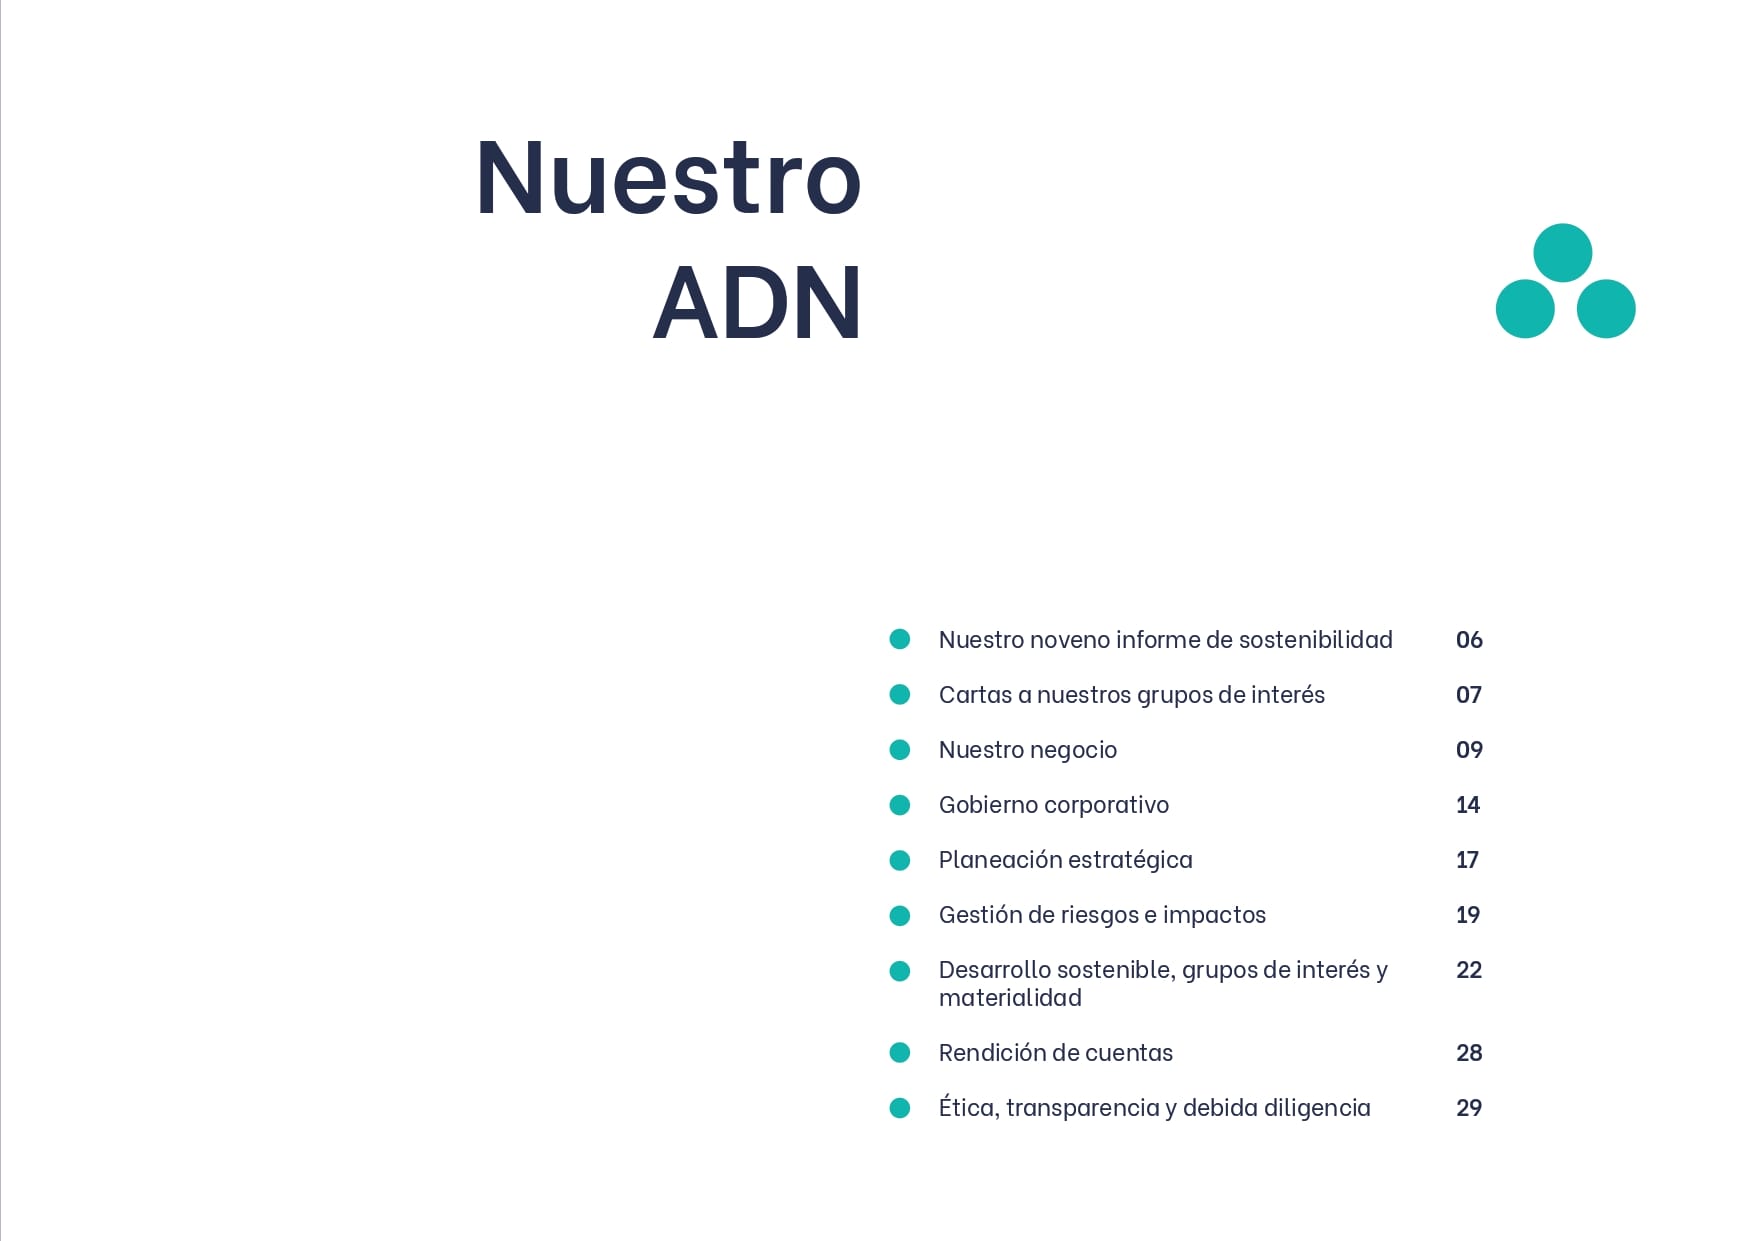 Diapositiva titulada "nuestro adn" con una lista de temas que incluyen informe de sustentabilidad, estrategia comercial y gobernanza, cada uno con números de página. Dos puntos verde azulado decoran la esquina superior derecha. el presente